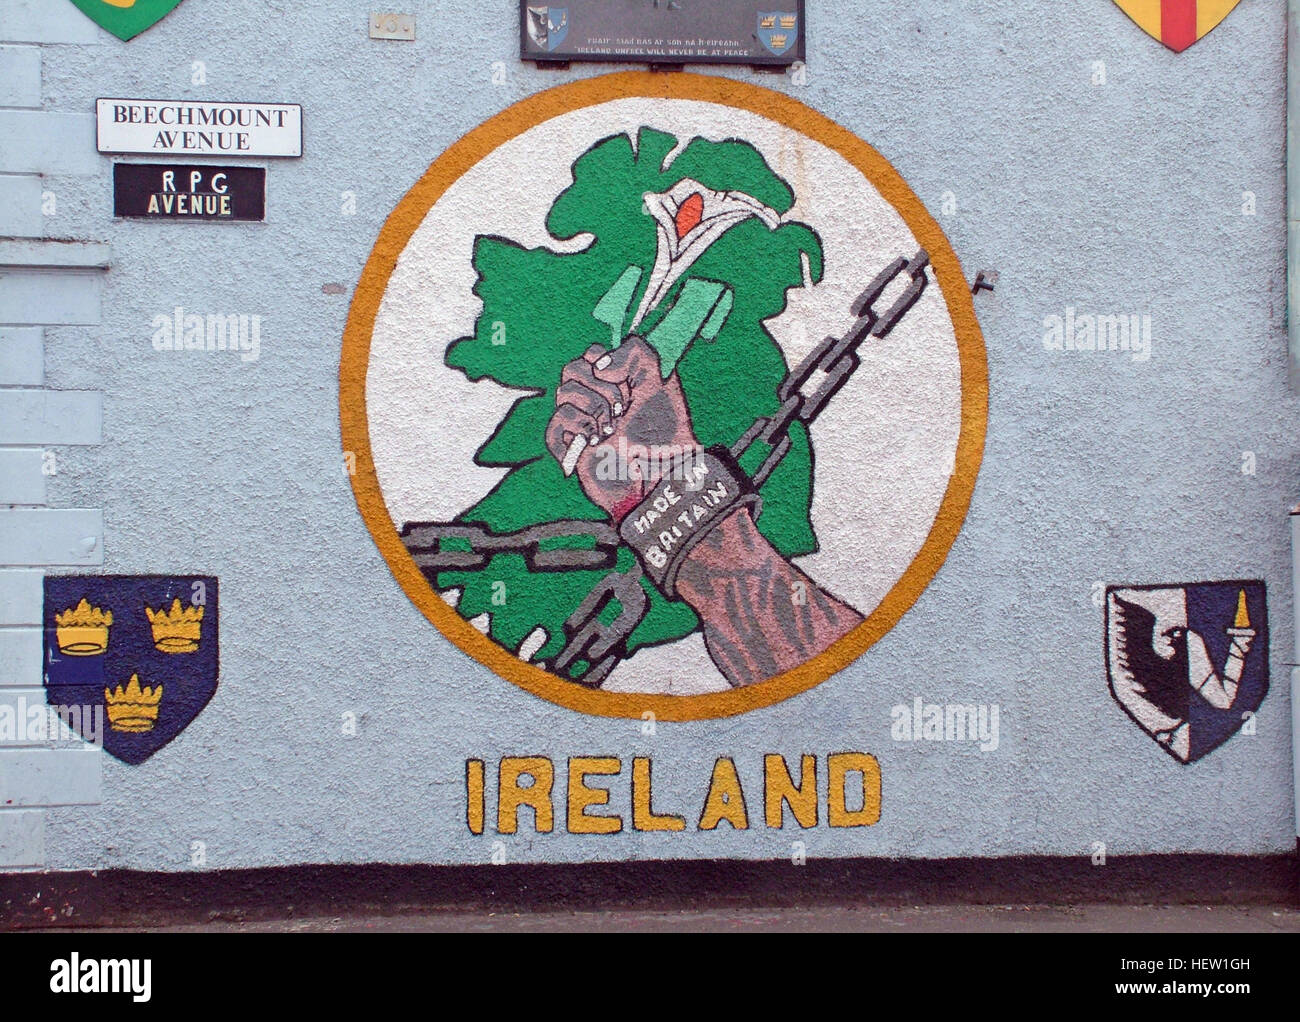 Belfast cade Rd murale repubblicano- irlandesi dolore realizzato in Gran Bretagna, RPG Avenue - Beechmount dettaglio Foto Stock